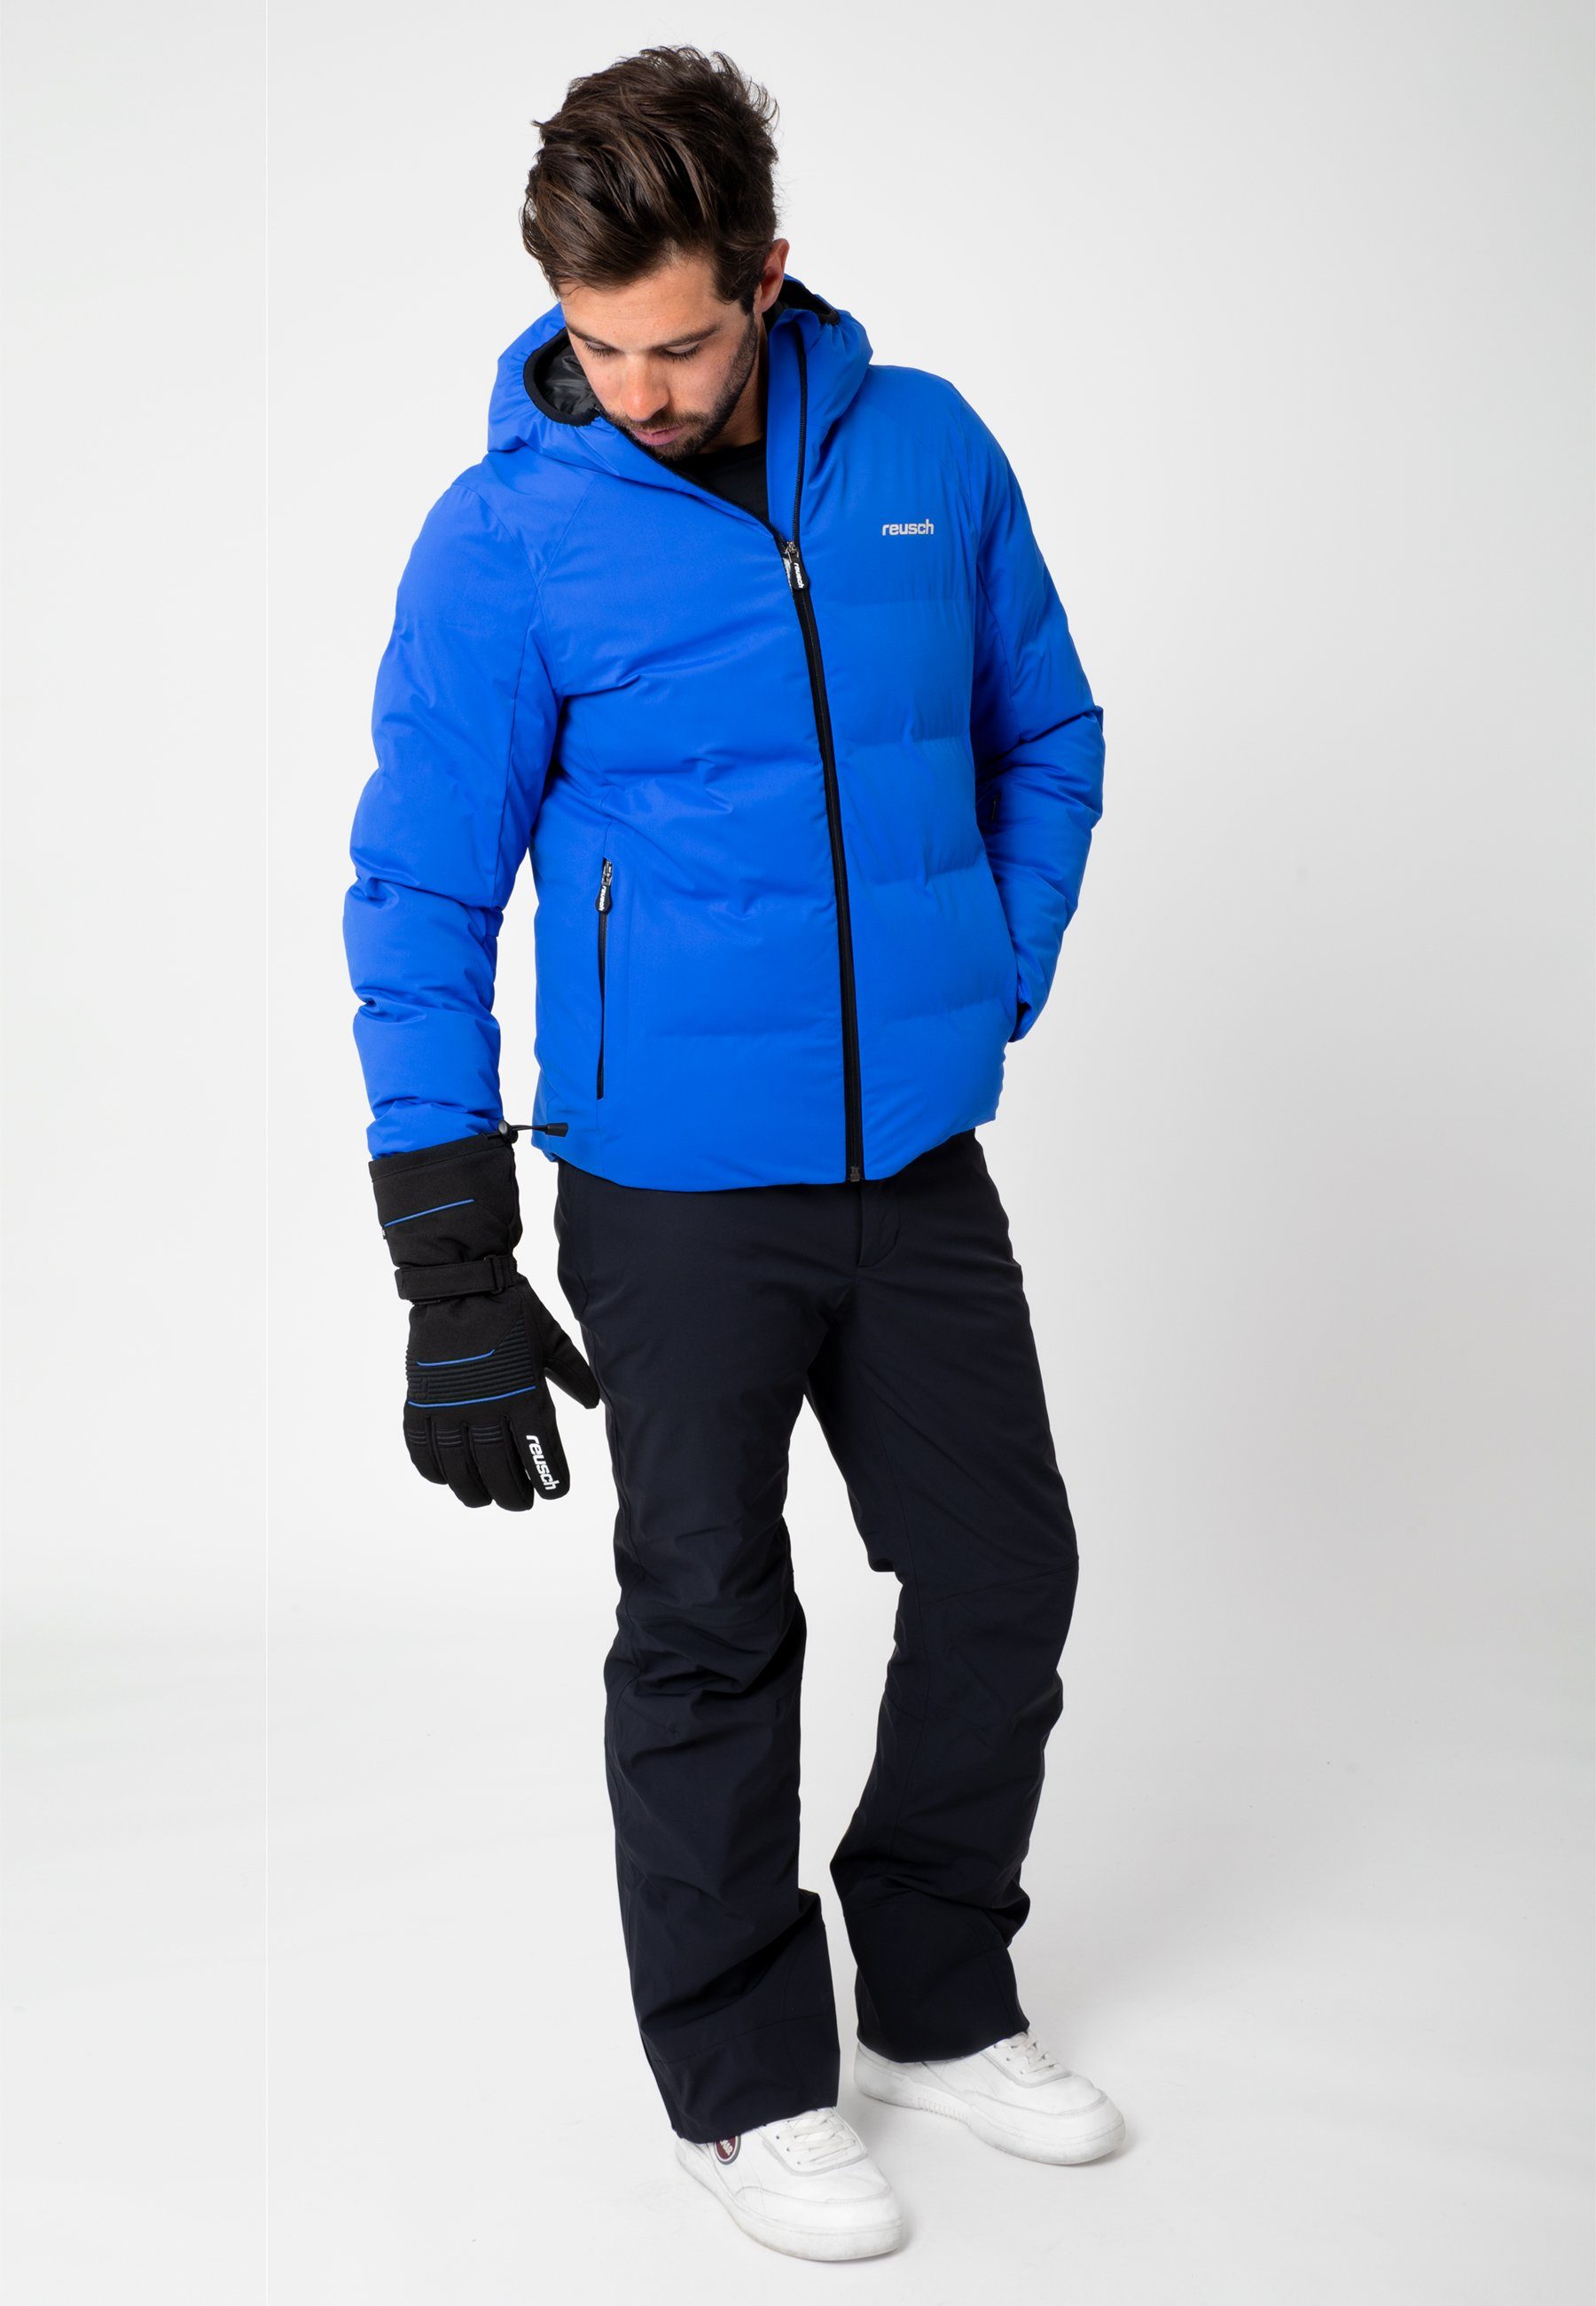 Design blau-schwarz in Skihandschuhe R-TEX® Crosby XT Reusch sportlichem